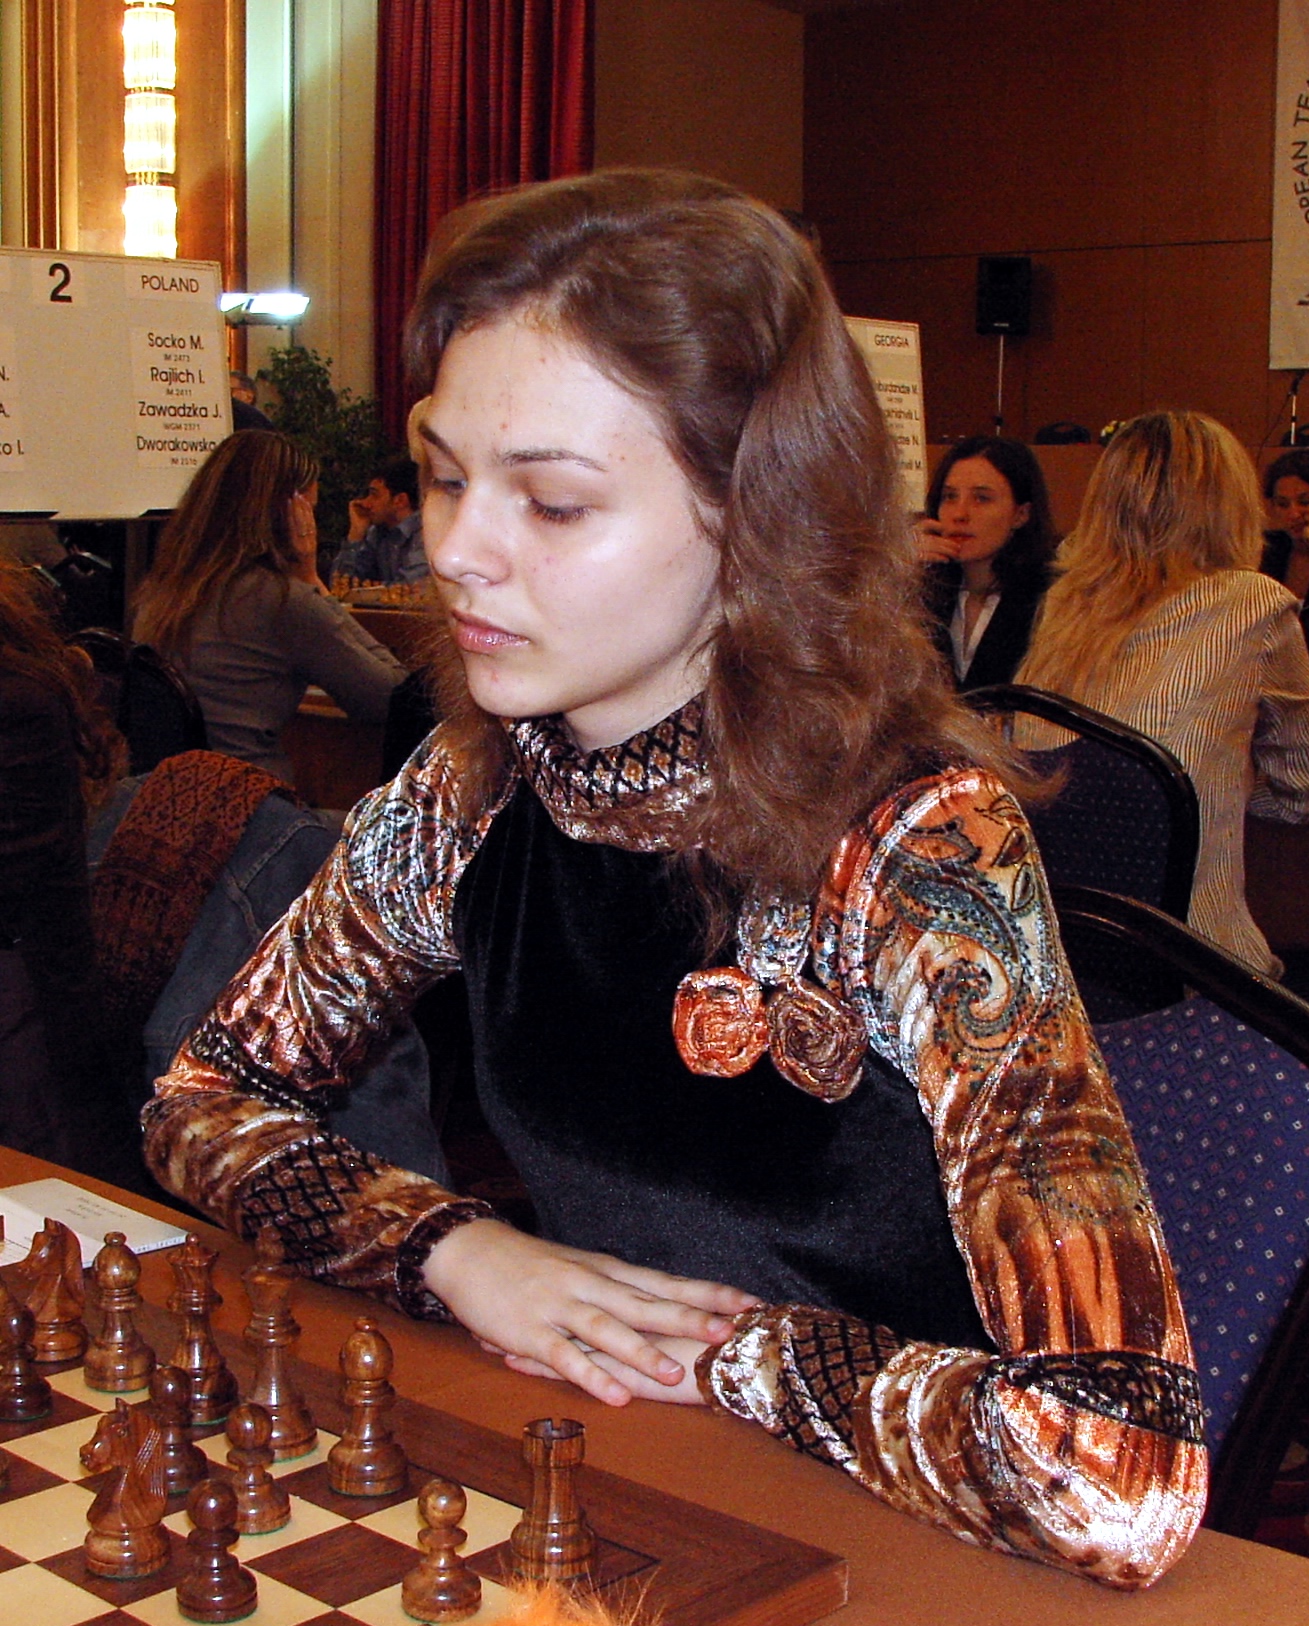 Anna Muzychuk - Wikipedia